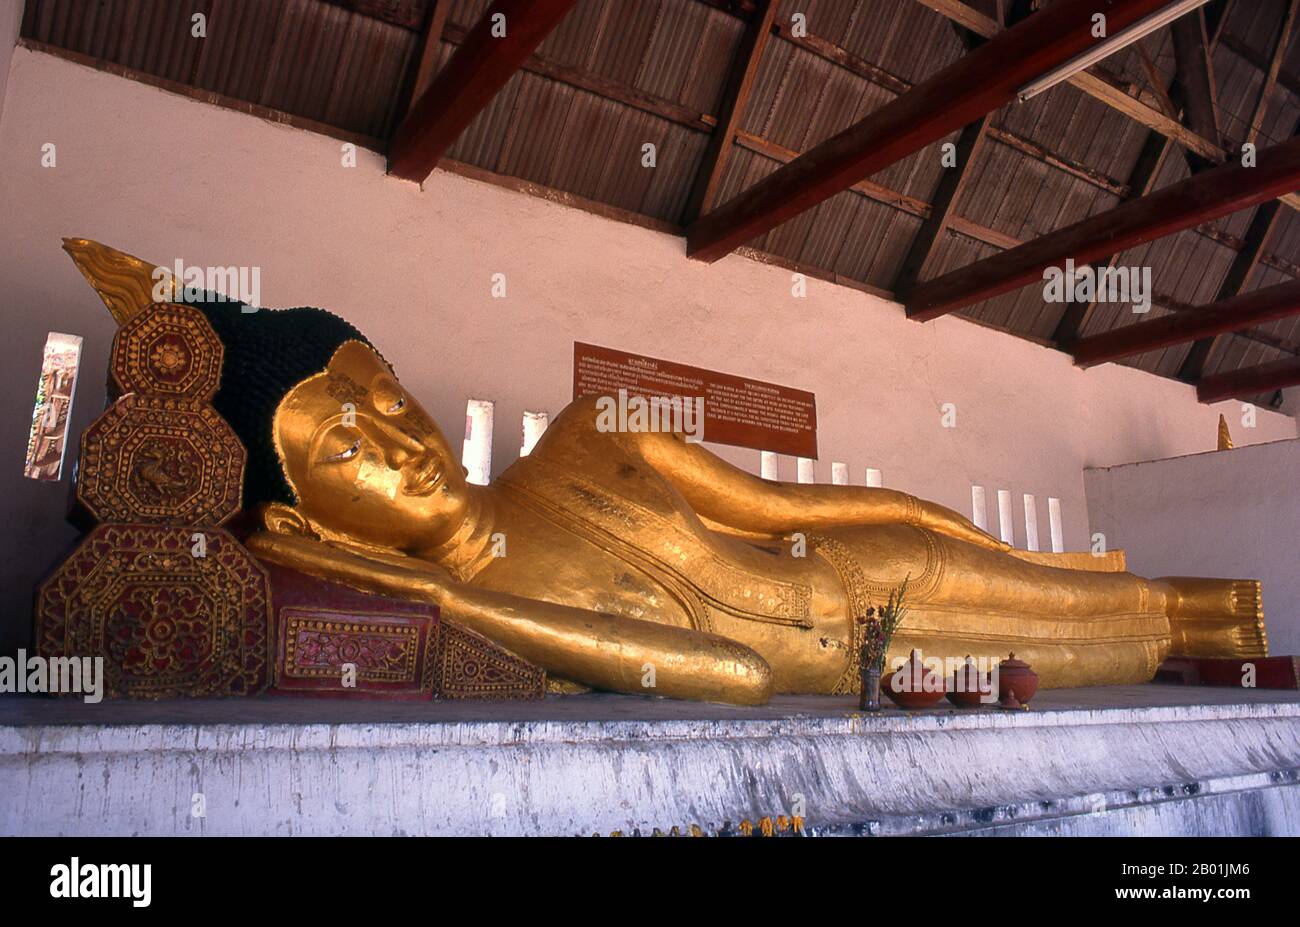 Thailand: Liegende Buddha-Statue in Wat Chedi Luang, Chiang Mai, Nordthailand. Wat Chedi Luang übersetzt wörtlich aus dem Thai als „Kloster der Großen Stupa“. Der Bau des Tempels begann am Ende des 14. Jahrhunderts, als das Königreich Lan Na seine Blütezeit erreichte. König Saen Muang Ma (1385-1401) wollte es als Ort eines großen Reliquars, um die Asche seines Vaters, König Ku Na (1355-1385), zu verwahren. Heute ist es der Ort der Lak Muang oder der Stadt Säule. Die jährliche Inthakin-Zeremonie findet innerhalb der Grenzen des Tempels statt. Stockfoto